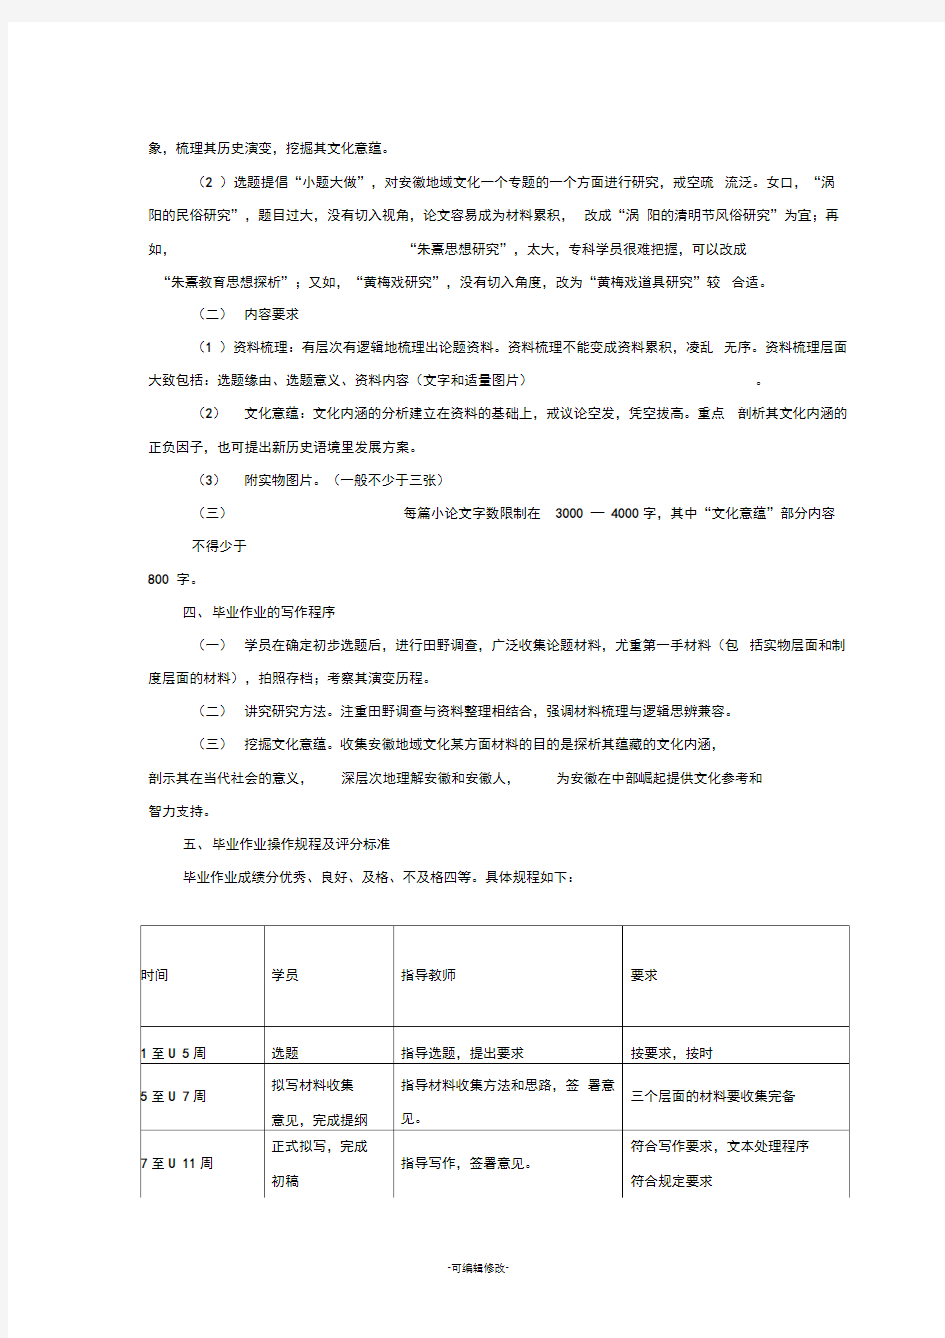 安徽广播电视大学开放教育汉语言文学专业(专科)毕业作业